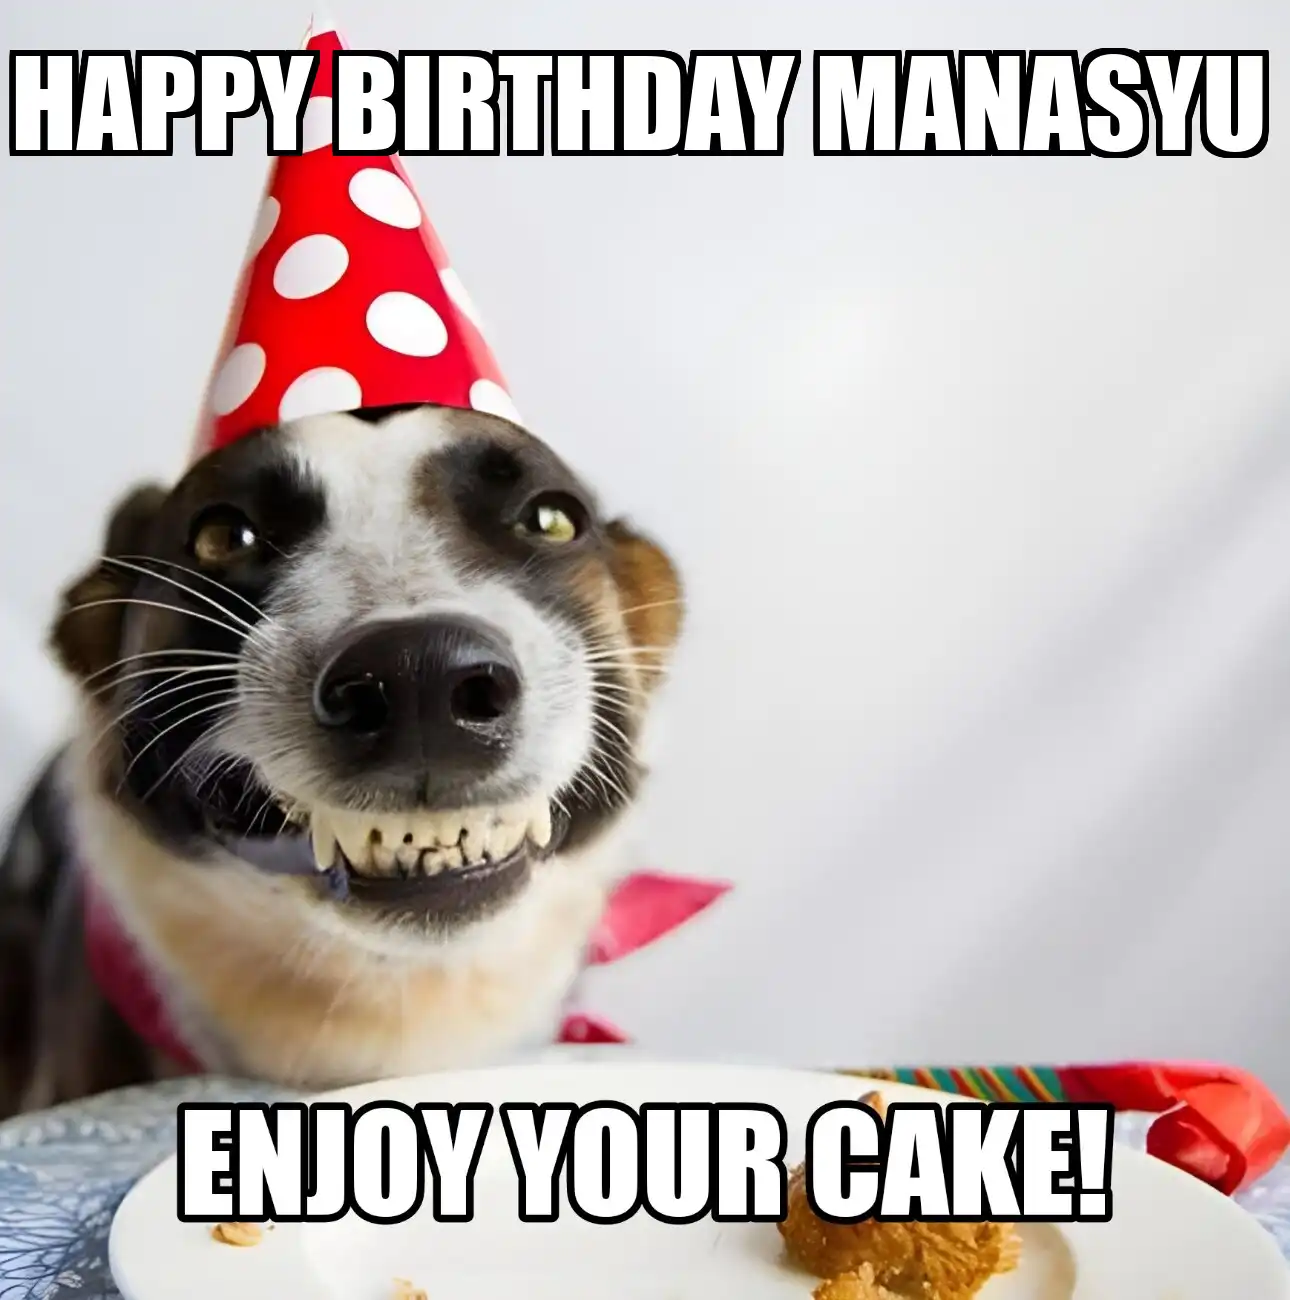 Happy Birthday Manasyu Enjoy Your Cake Dog Meme